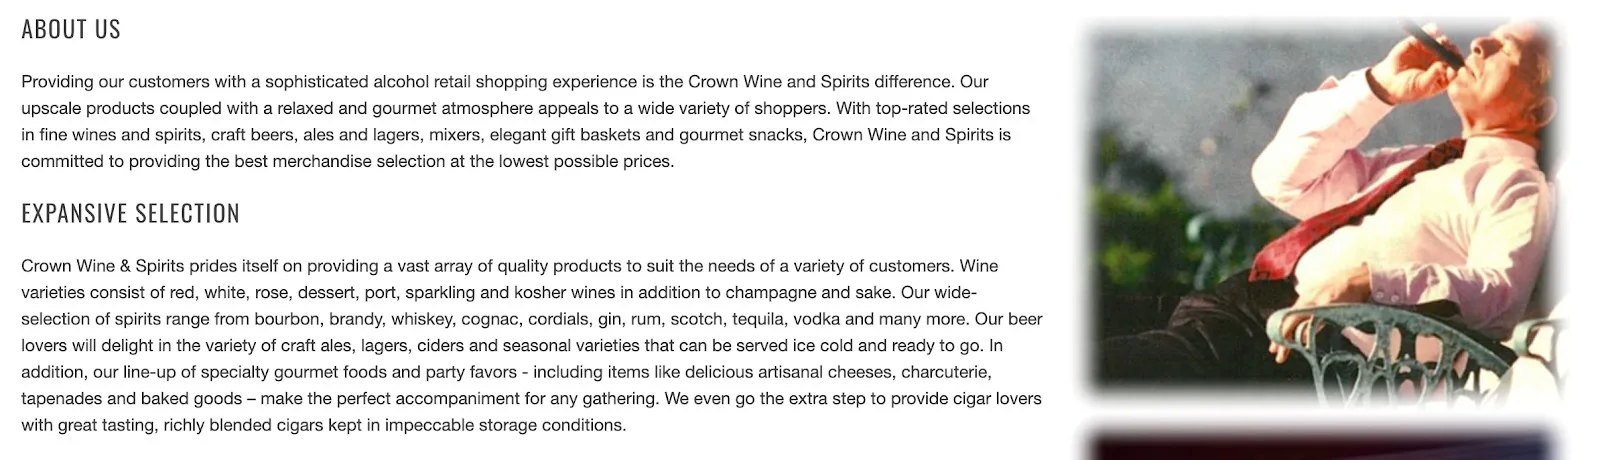 https://bcwpmktg.wpengine.com/wp-content/uploads/2020/07/Crown-wine-aup.jpg